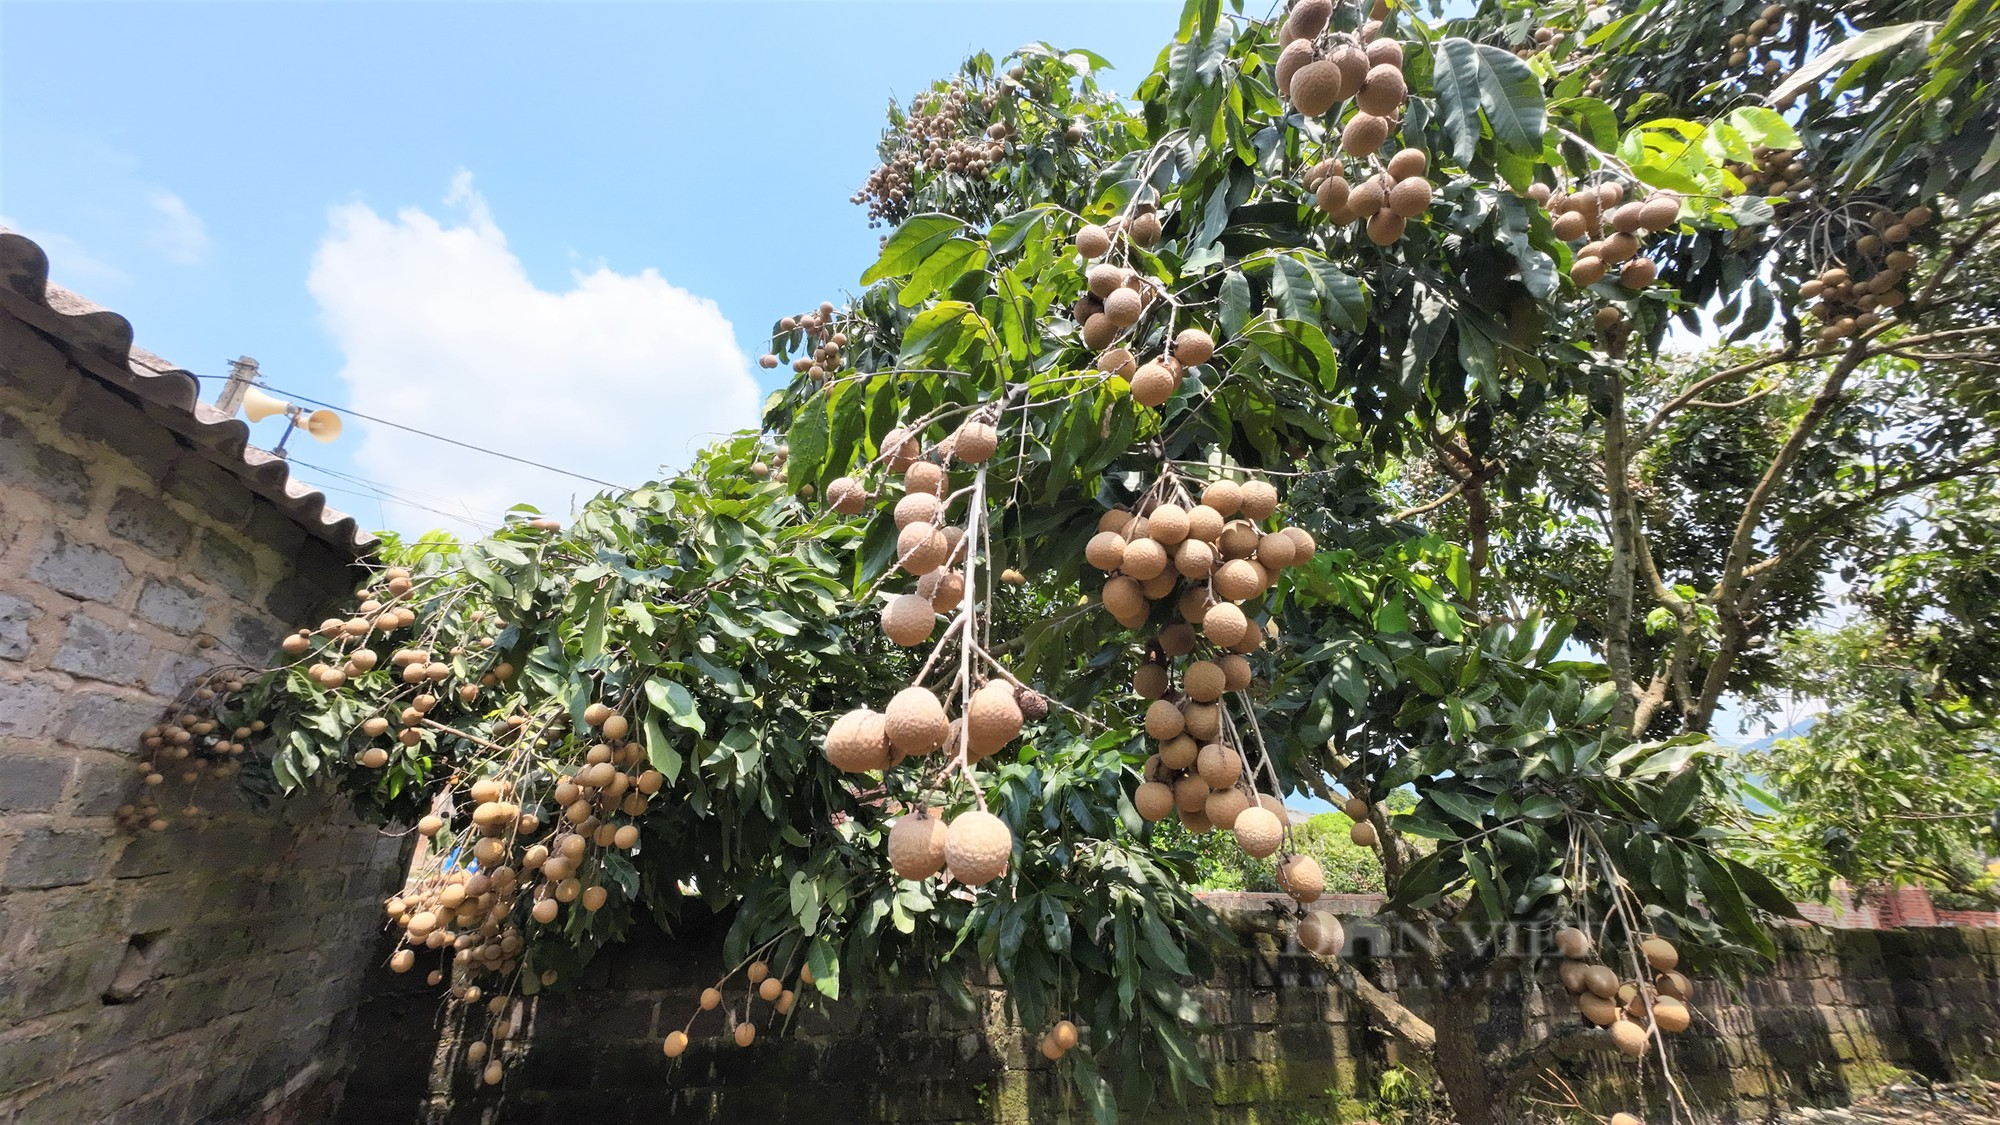 Nông dân trồng nhãn ở Chí Linh – Hải Dương chưa kịp vui được mùa liền buồn rũ vì giá thấp - Ảnh 7.